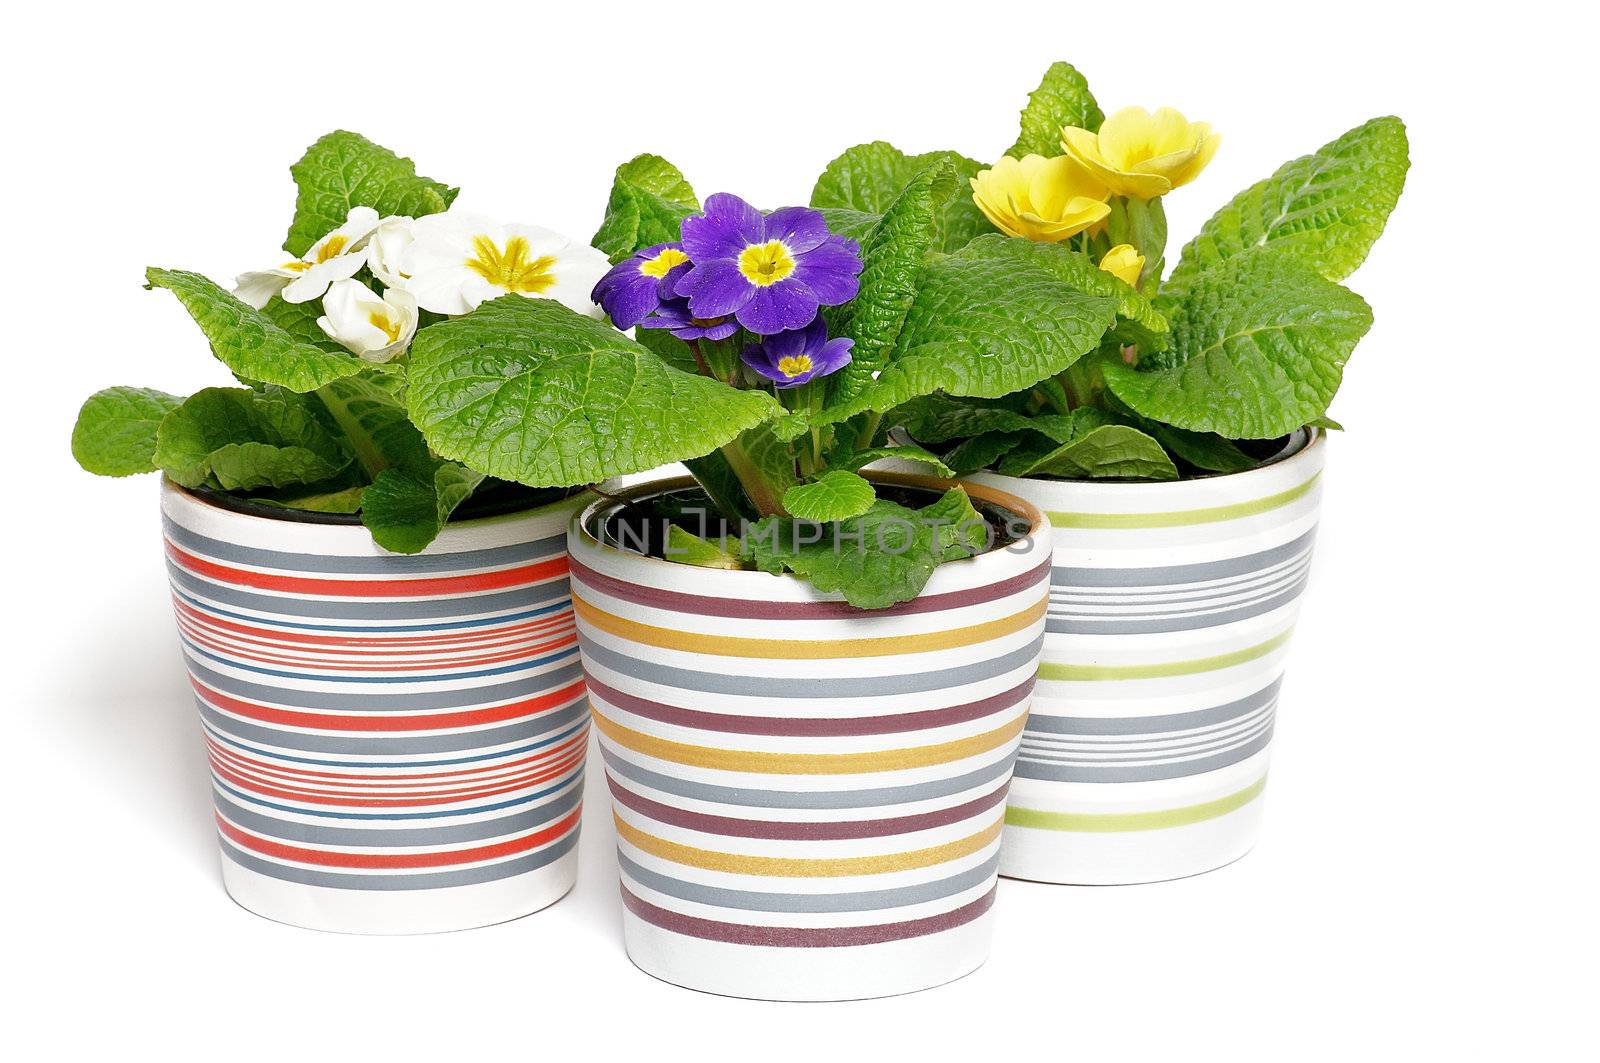 Multi-colored Primeroses in striped flower pots  by zhekos